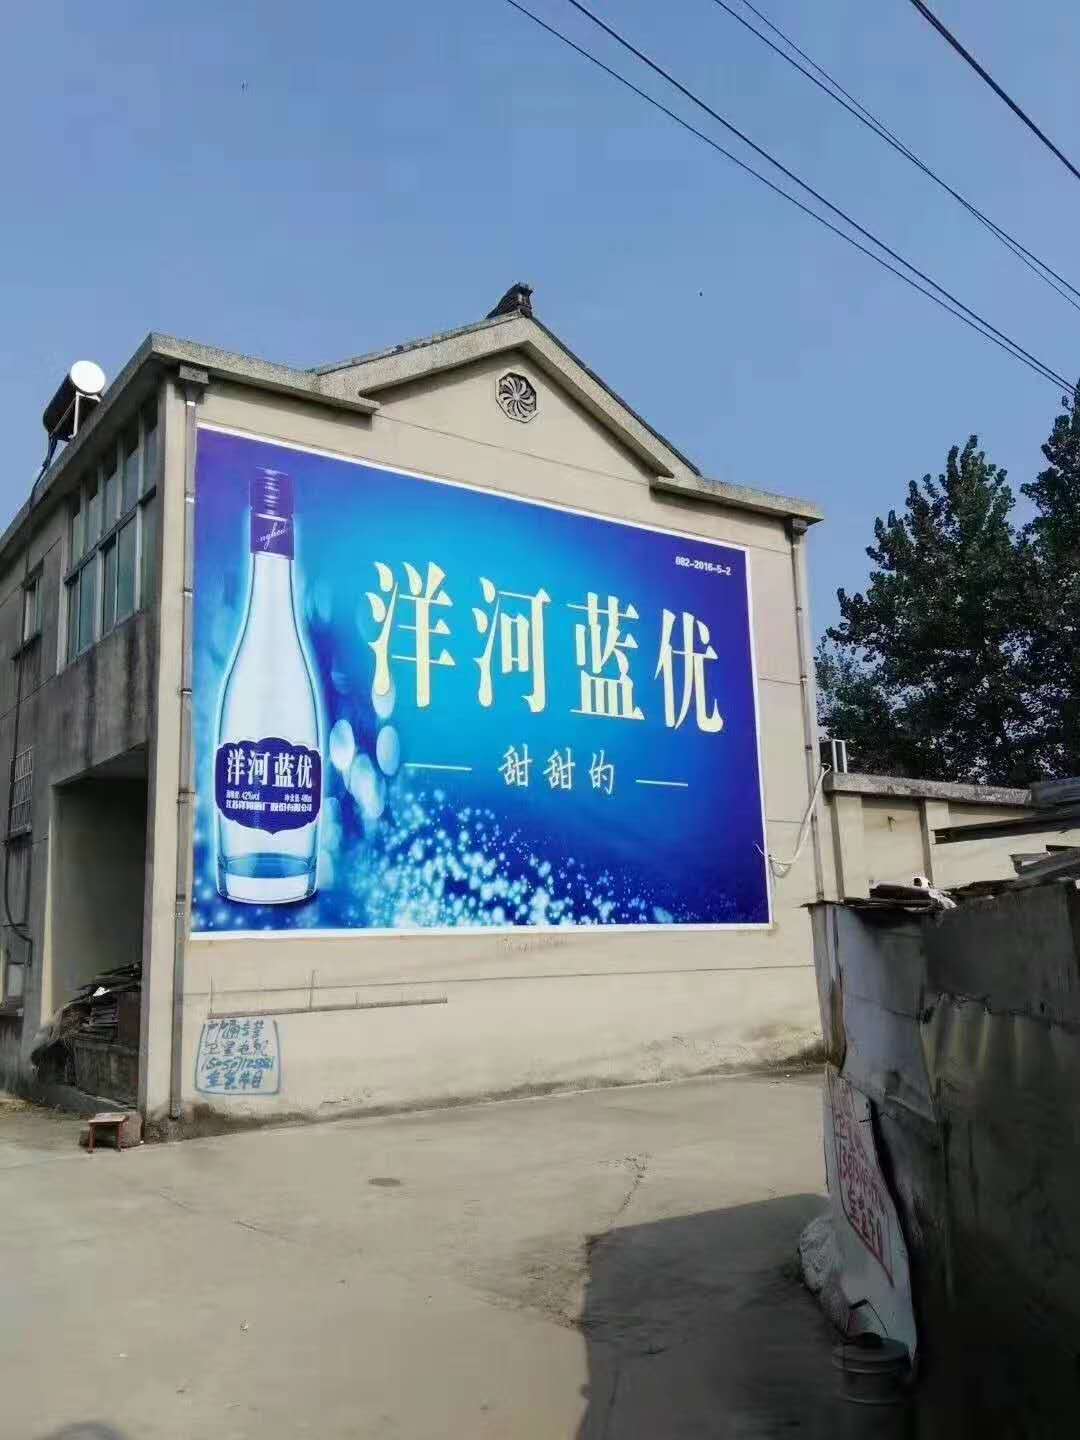 德阳墙体喷绘广告制作革新服务模式